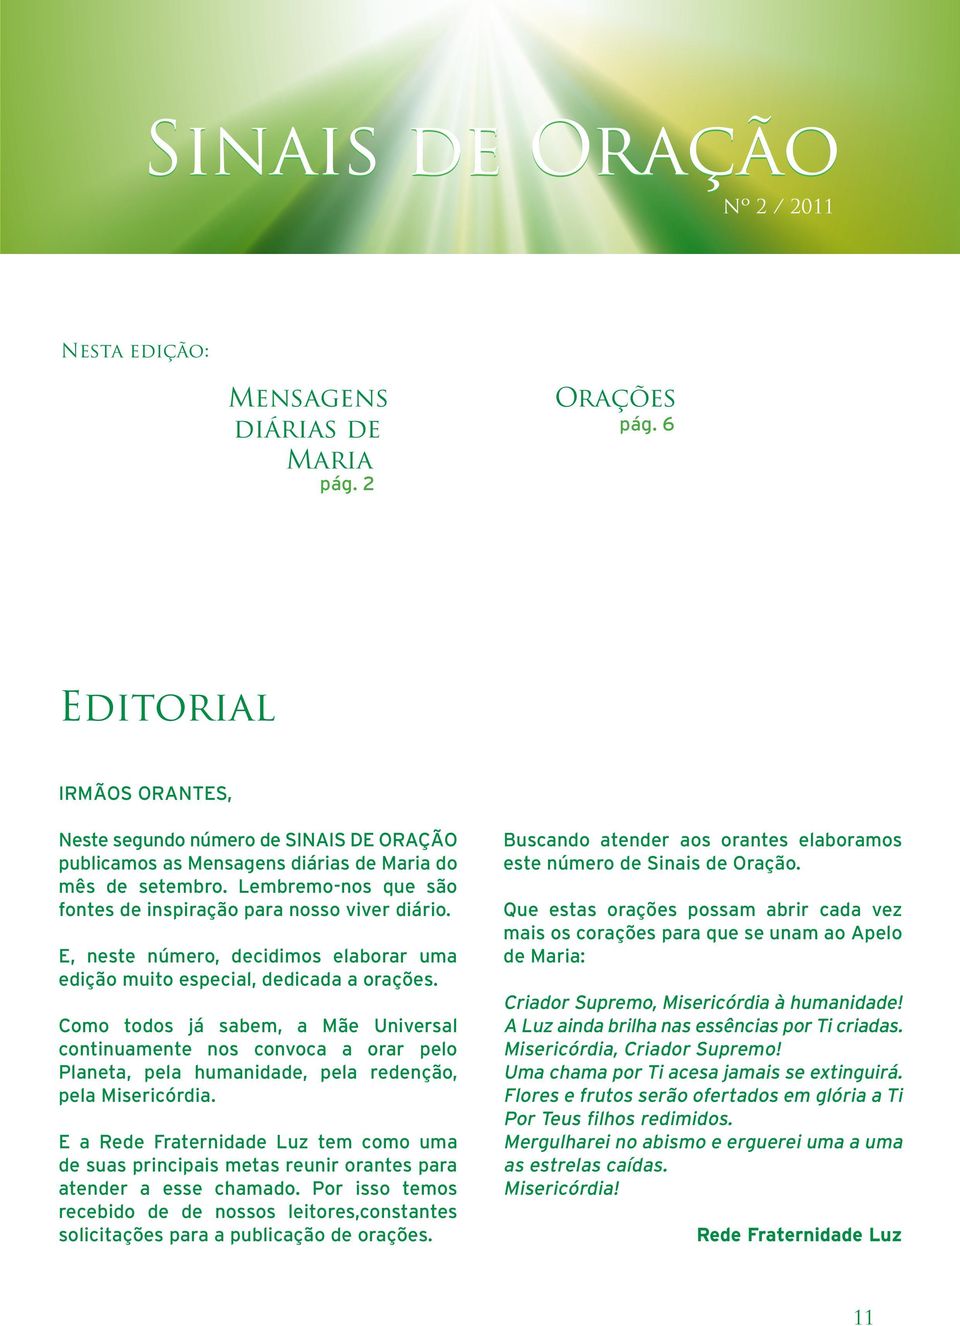 E, neste número, decidimos elaborar uma edição muito especial, dedicada a orações.